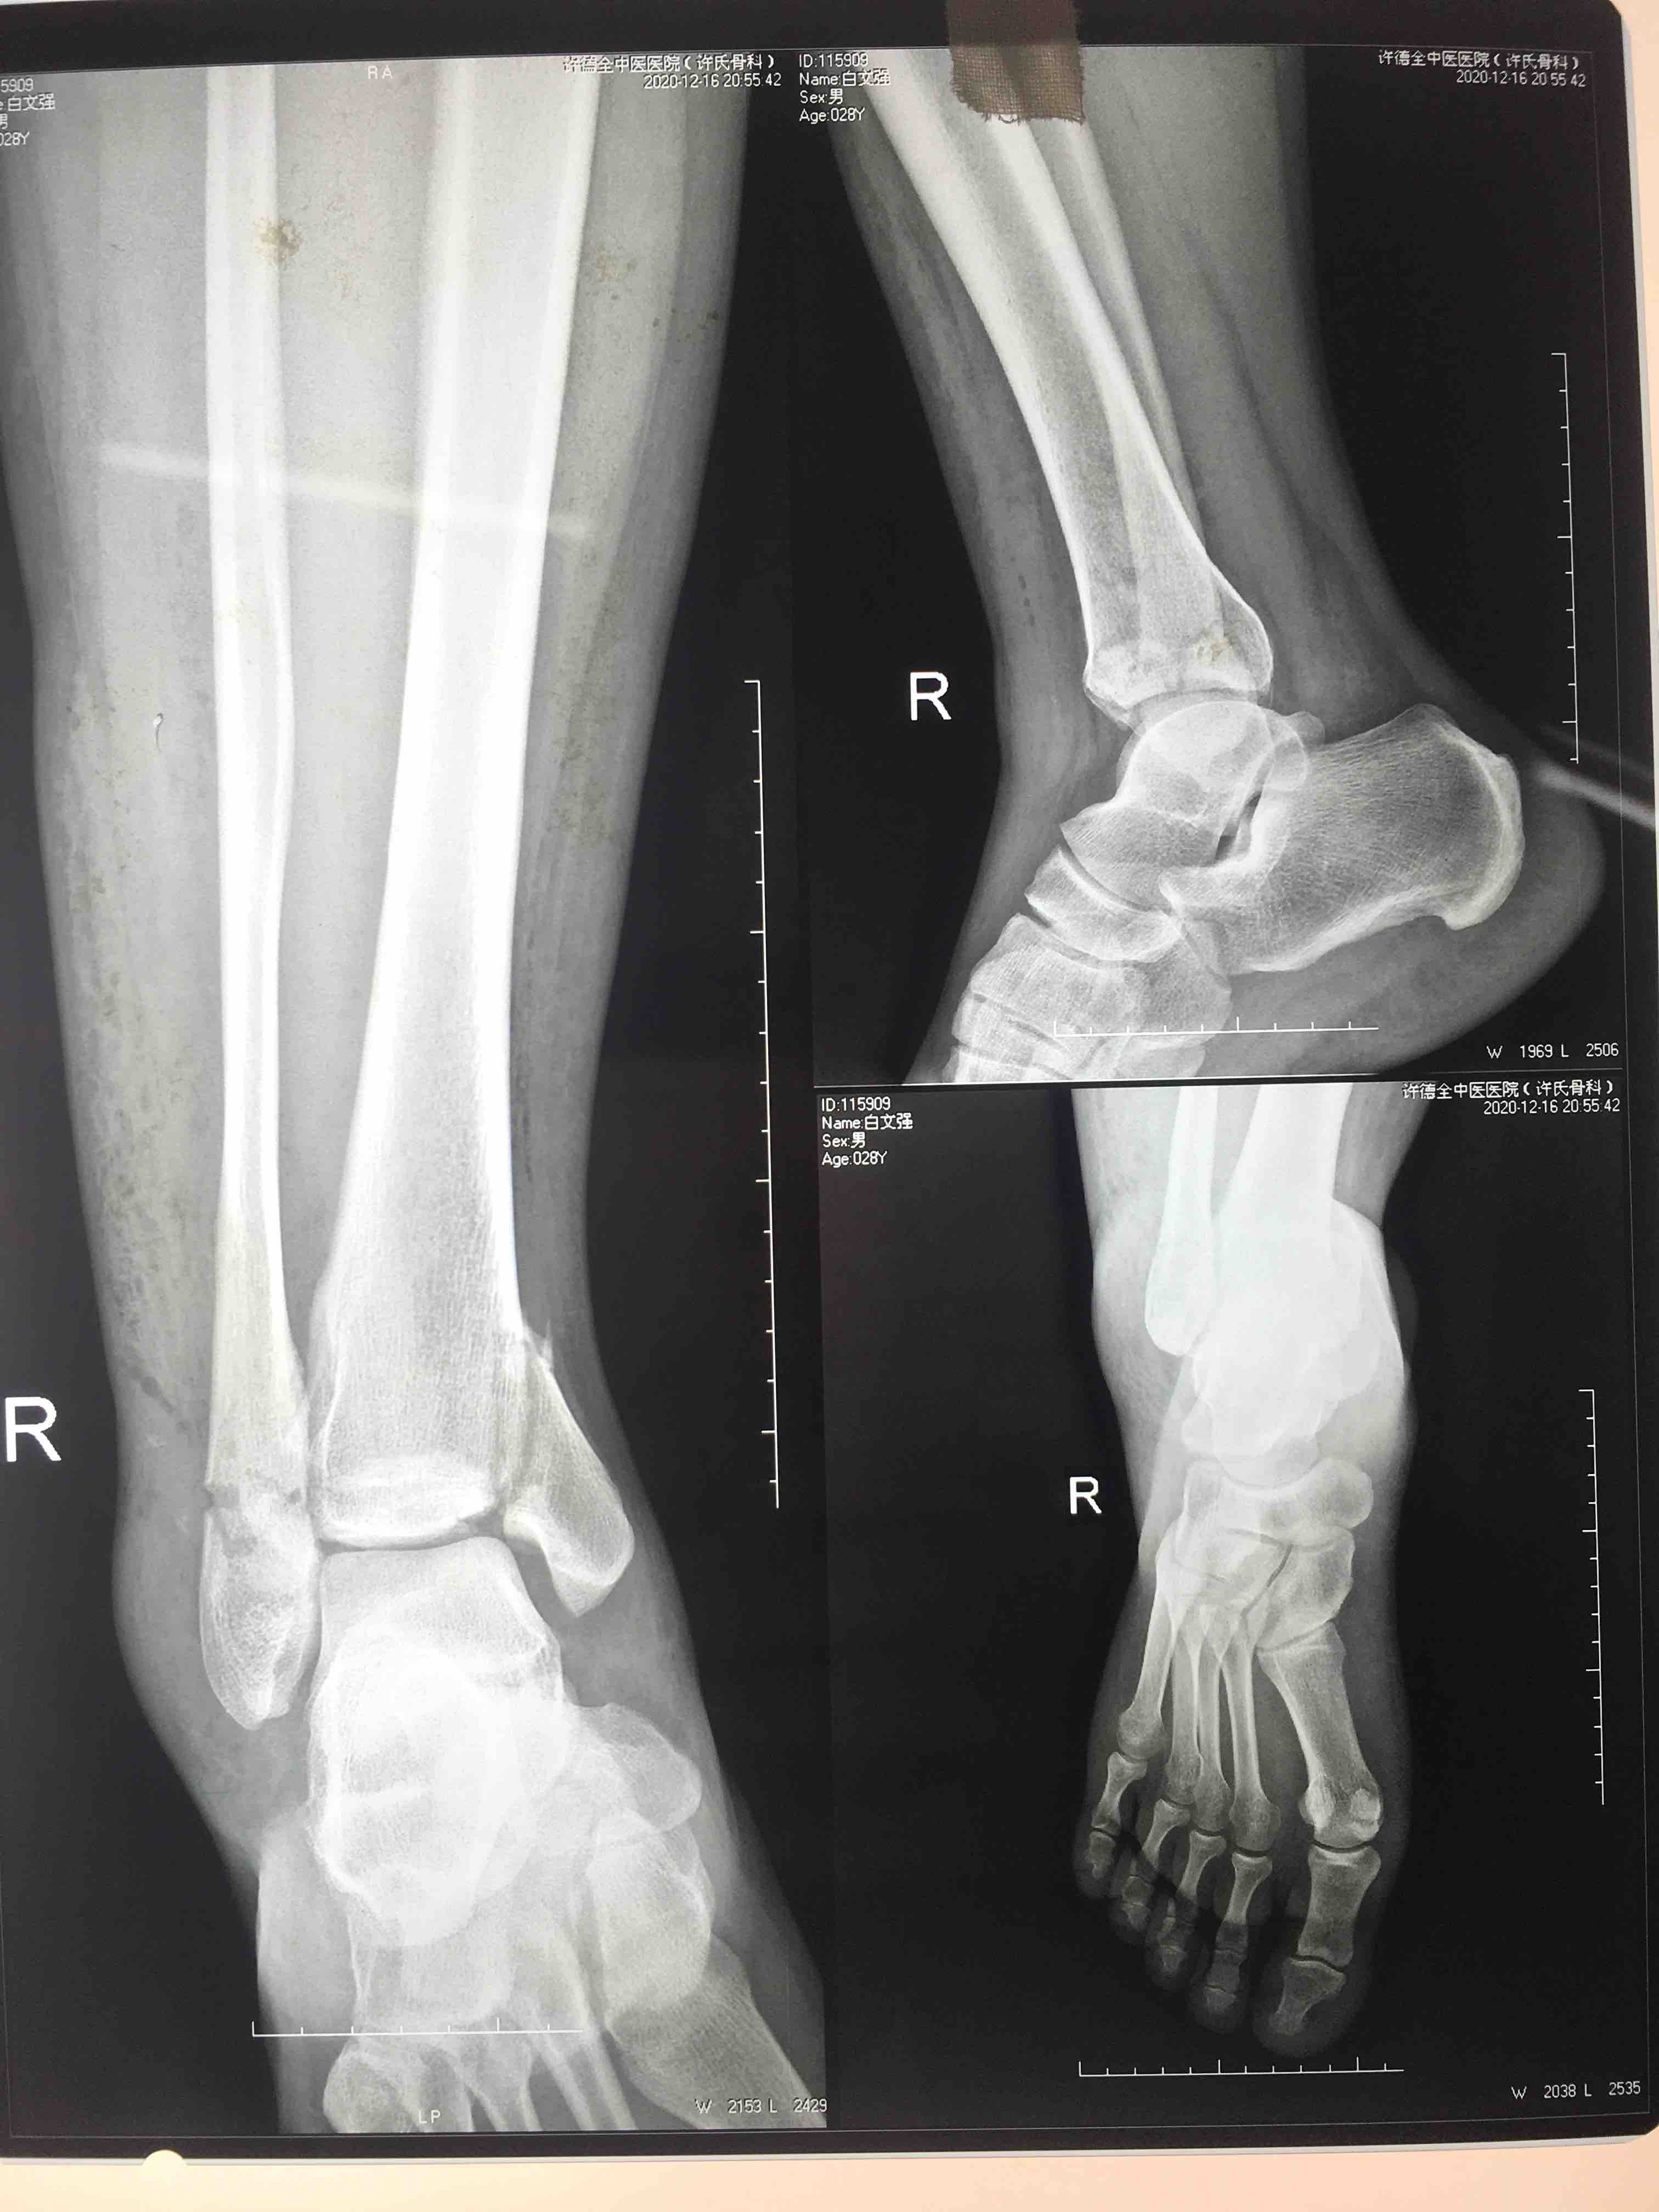 2种不同手术方法治疗陈旧性踝关节骨折合并下胫腓联合损伤的对比